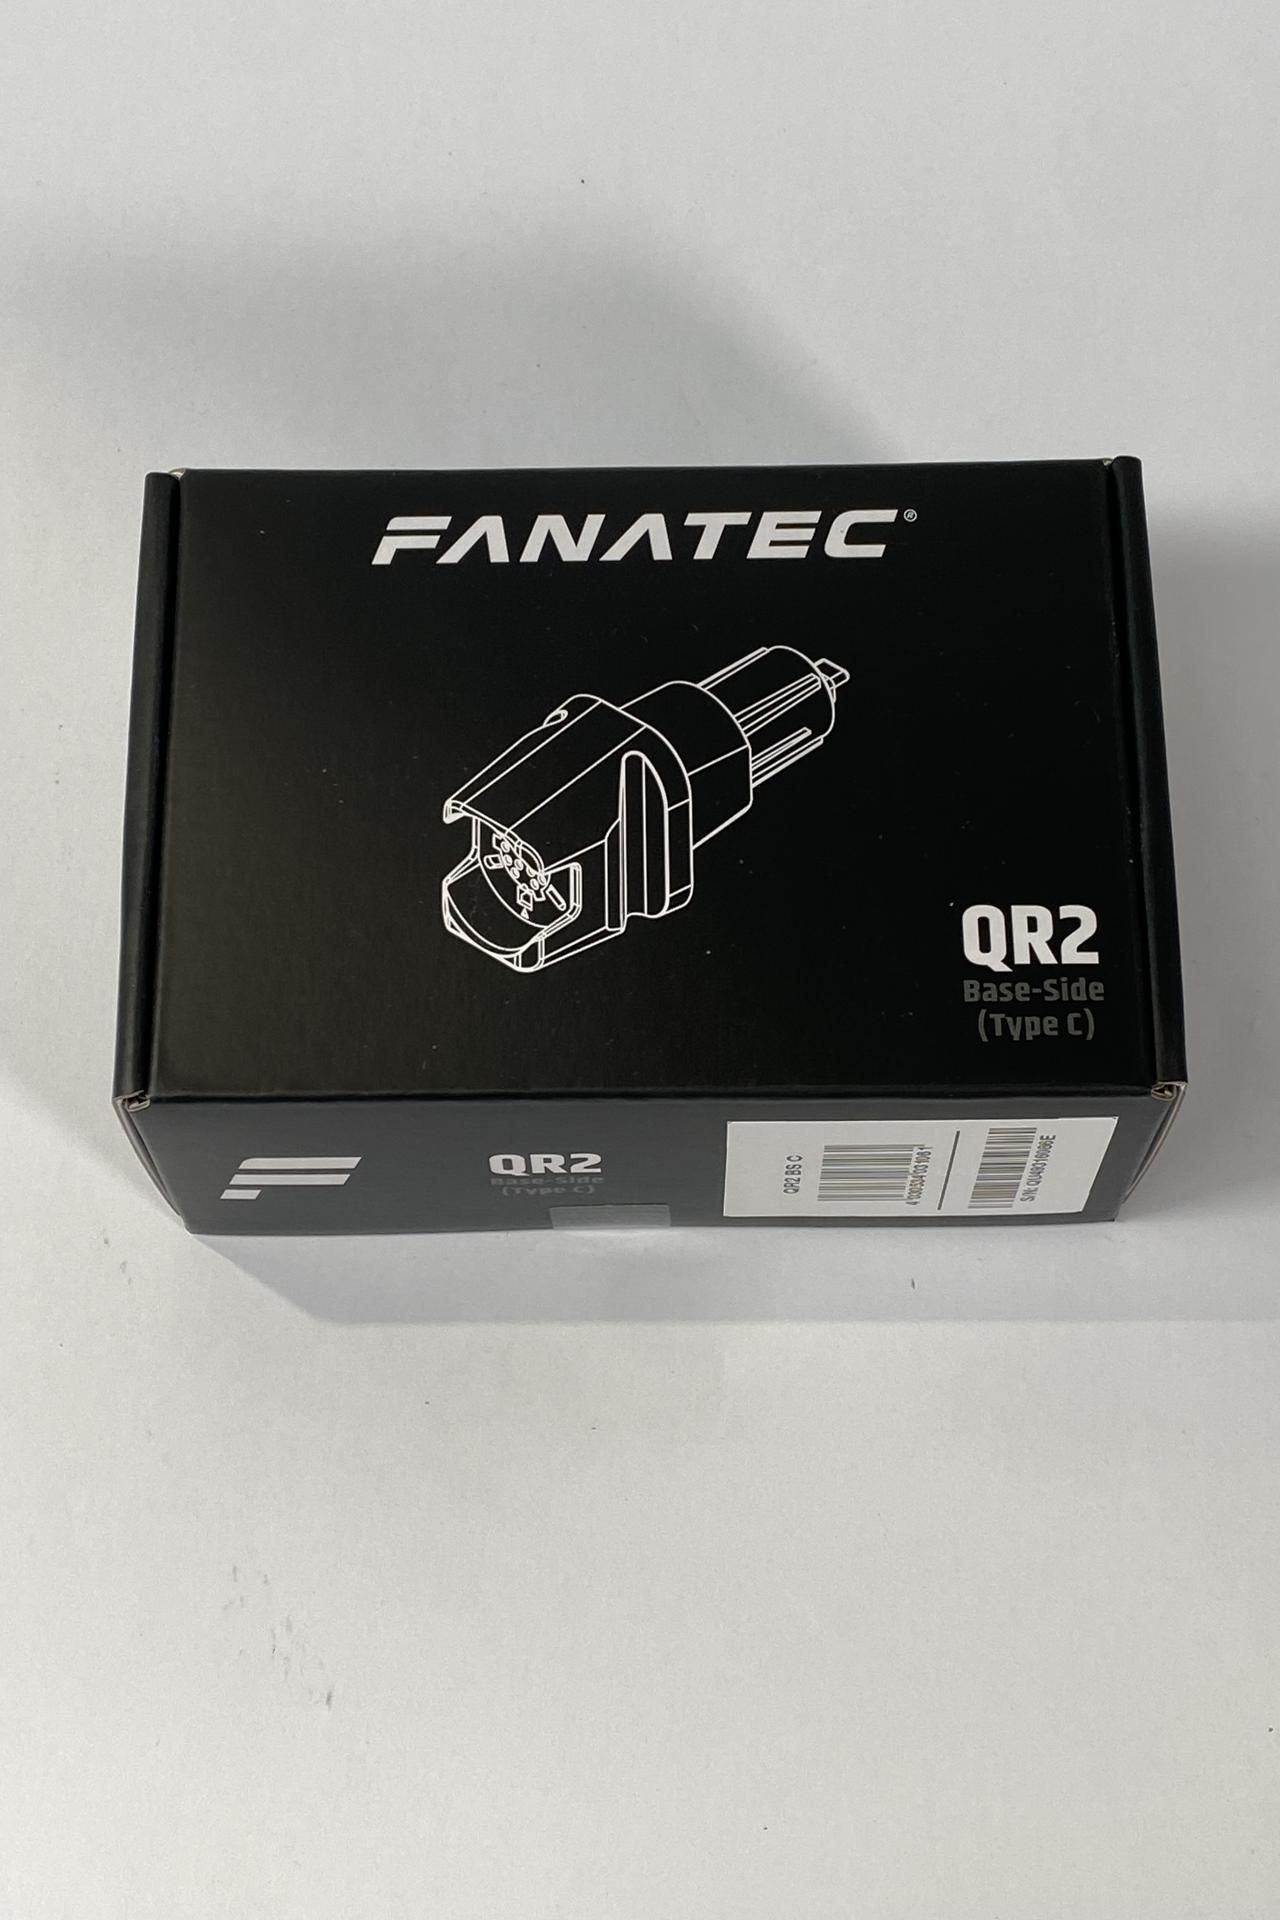 Fanatec QR2 base side (Type C).